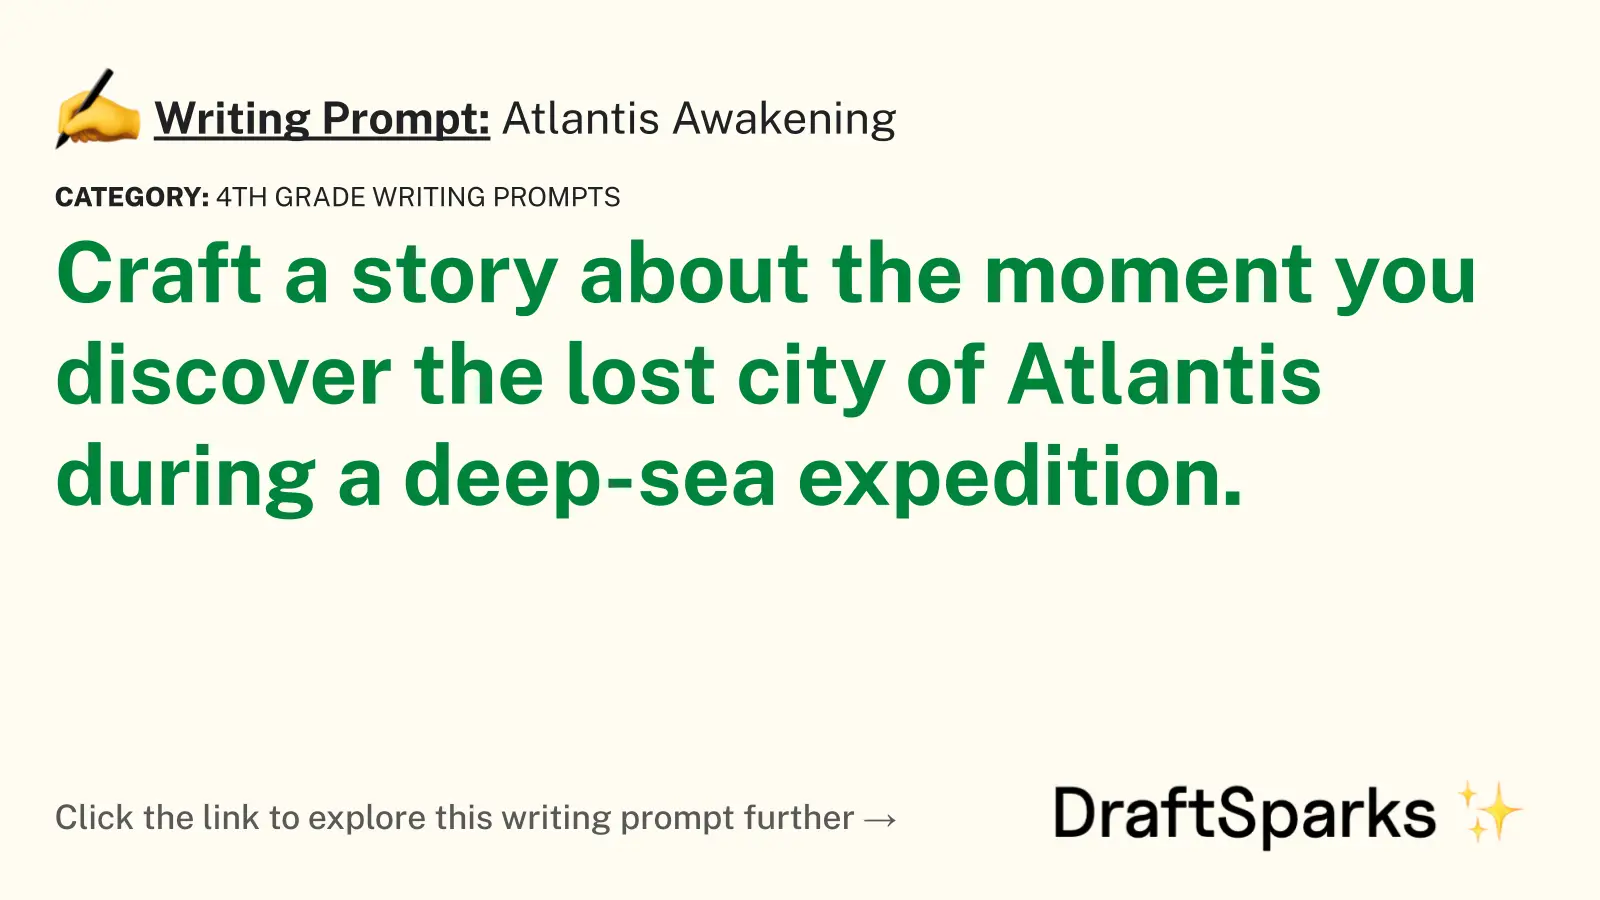 Atlantis Awakening